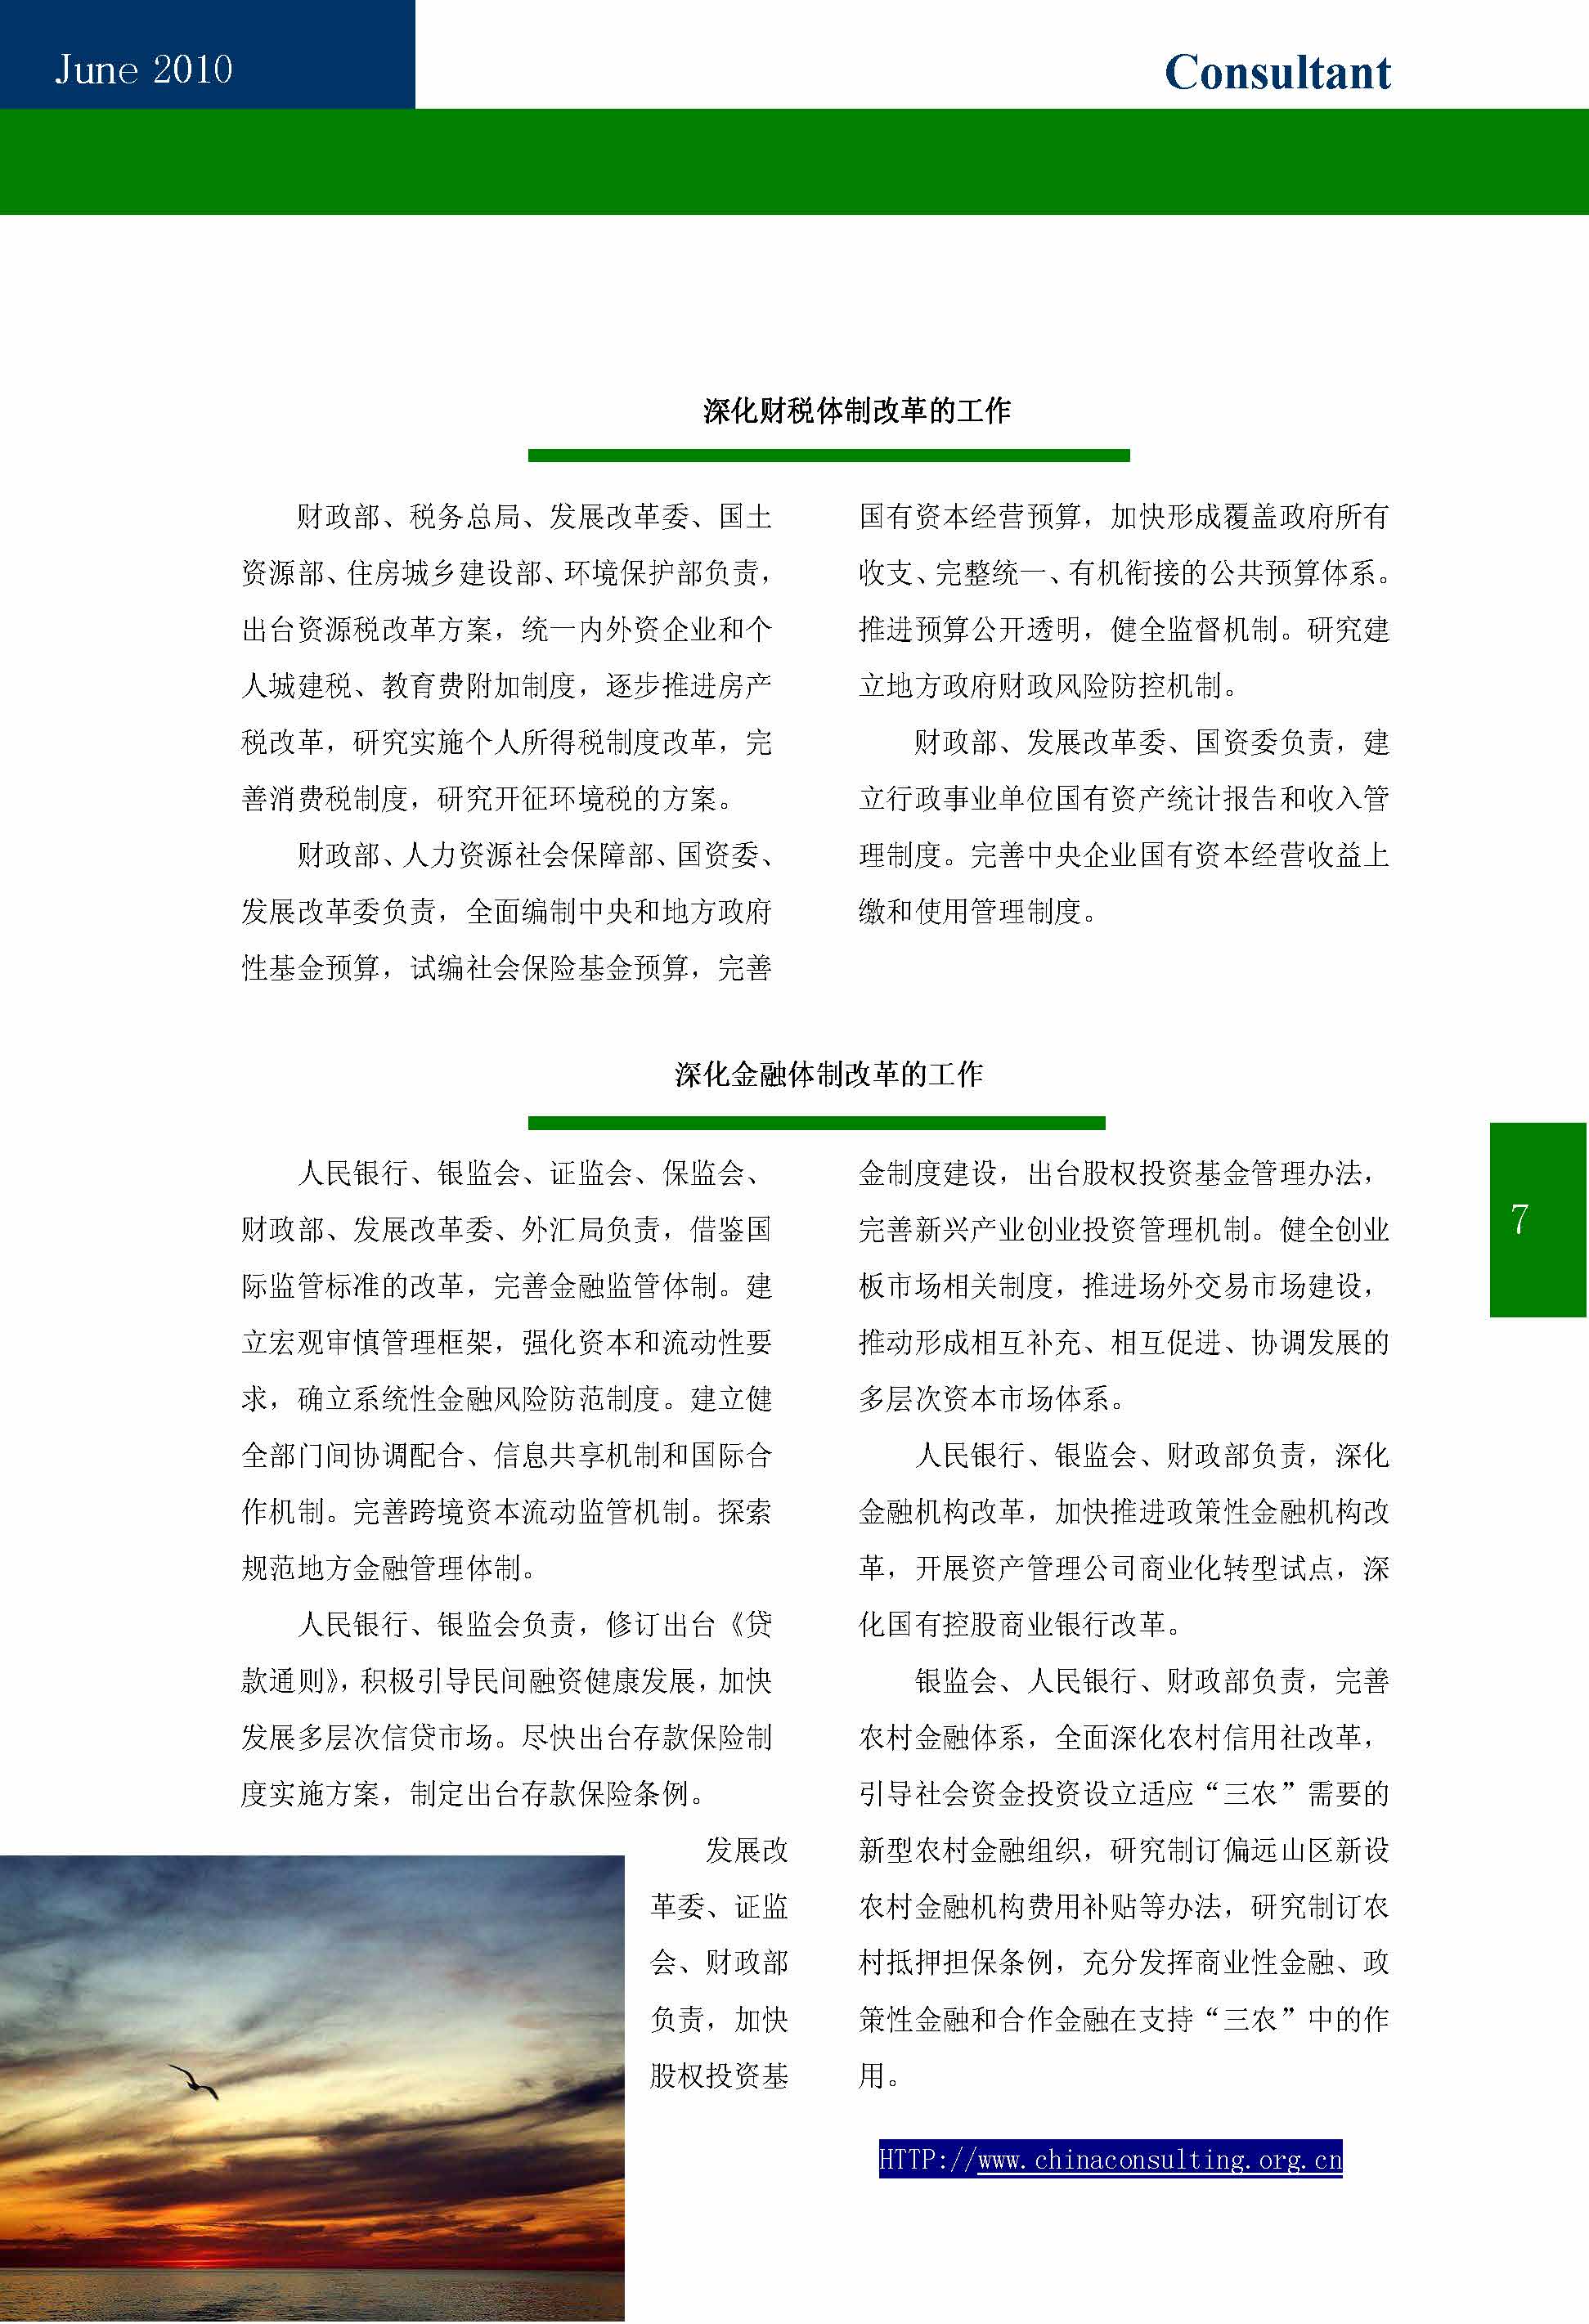 10中国科技咨询协会第十期会刊_页面_09.jpg